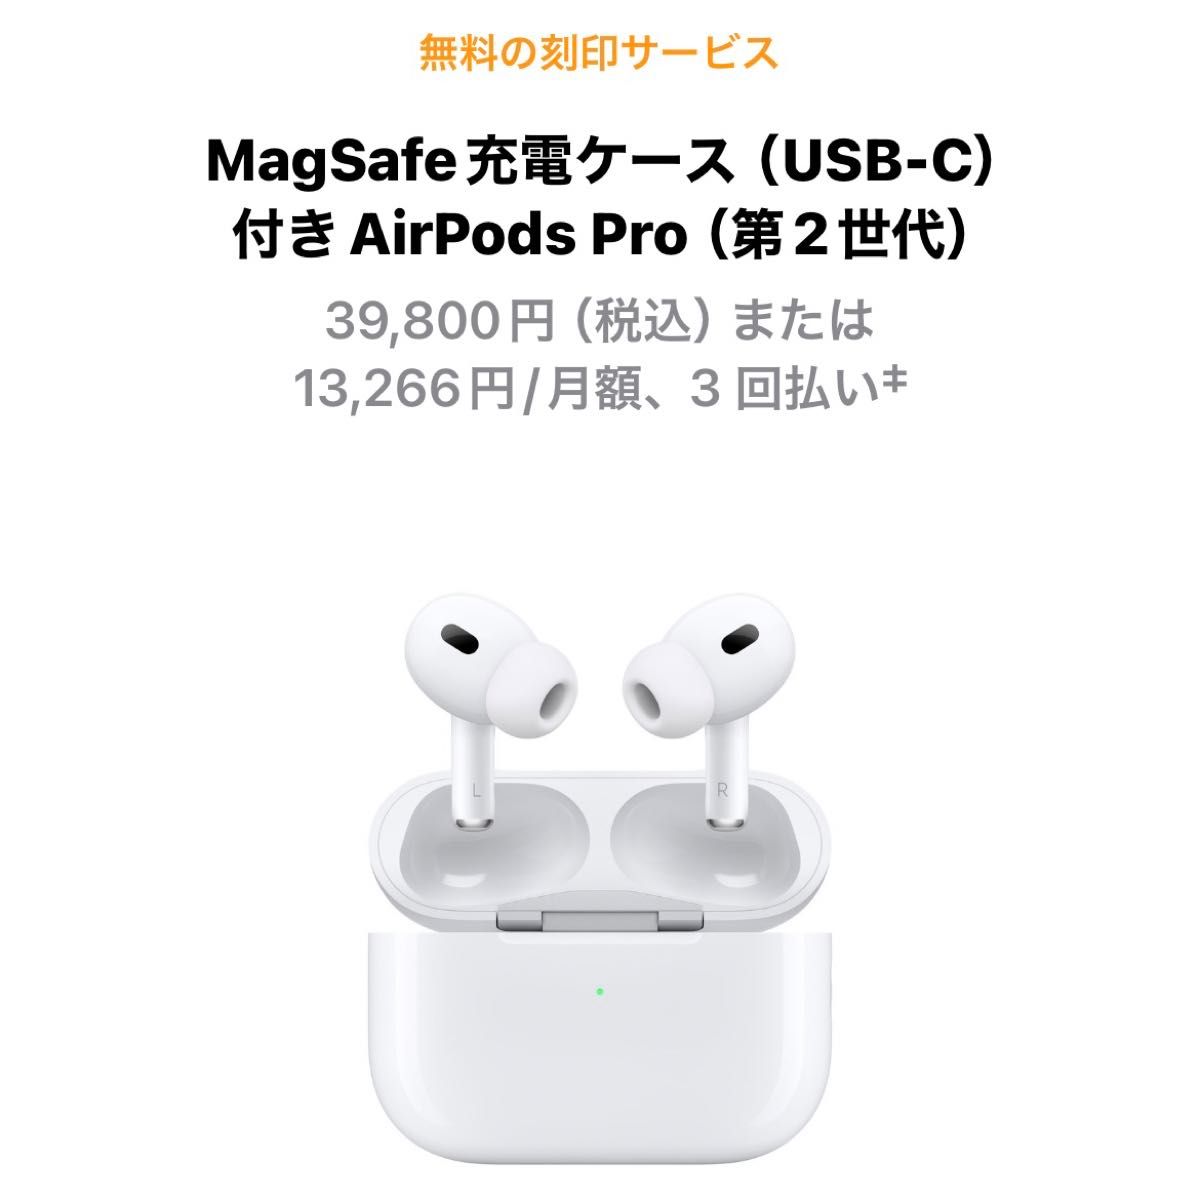 新品未開封 AirPods Pro 第2世代 MagSafe充電ケース USB-C付き